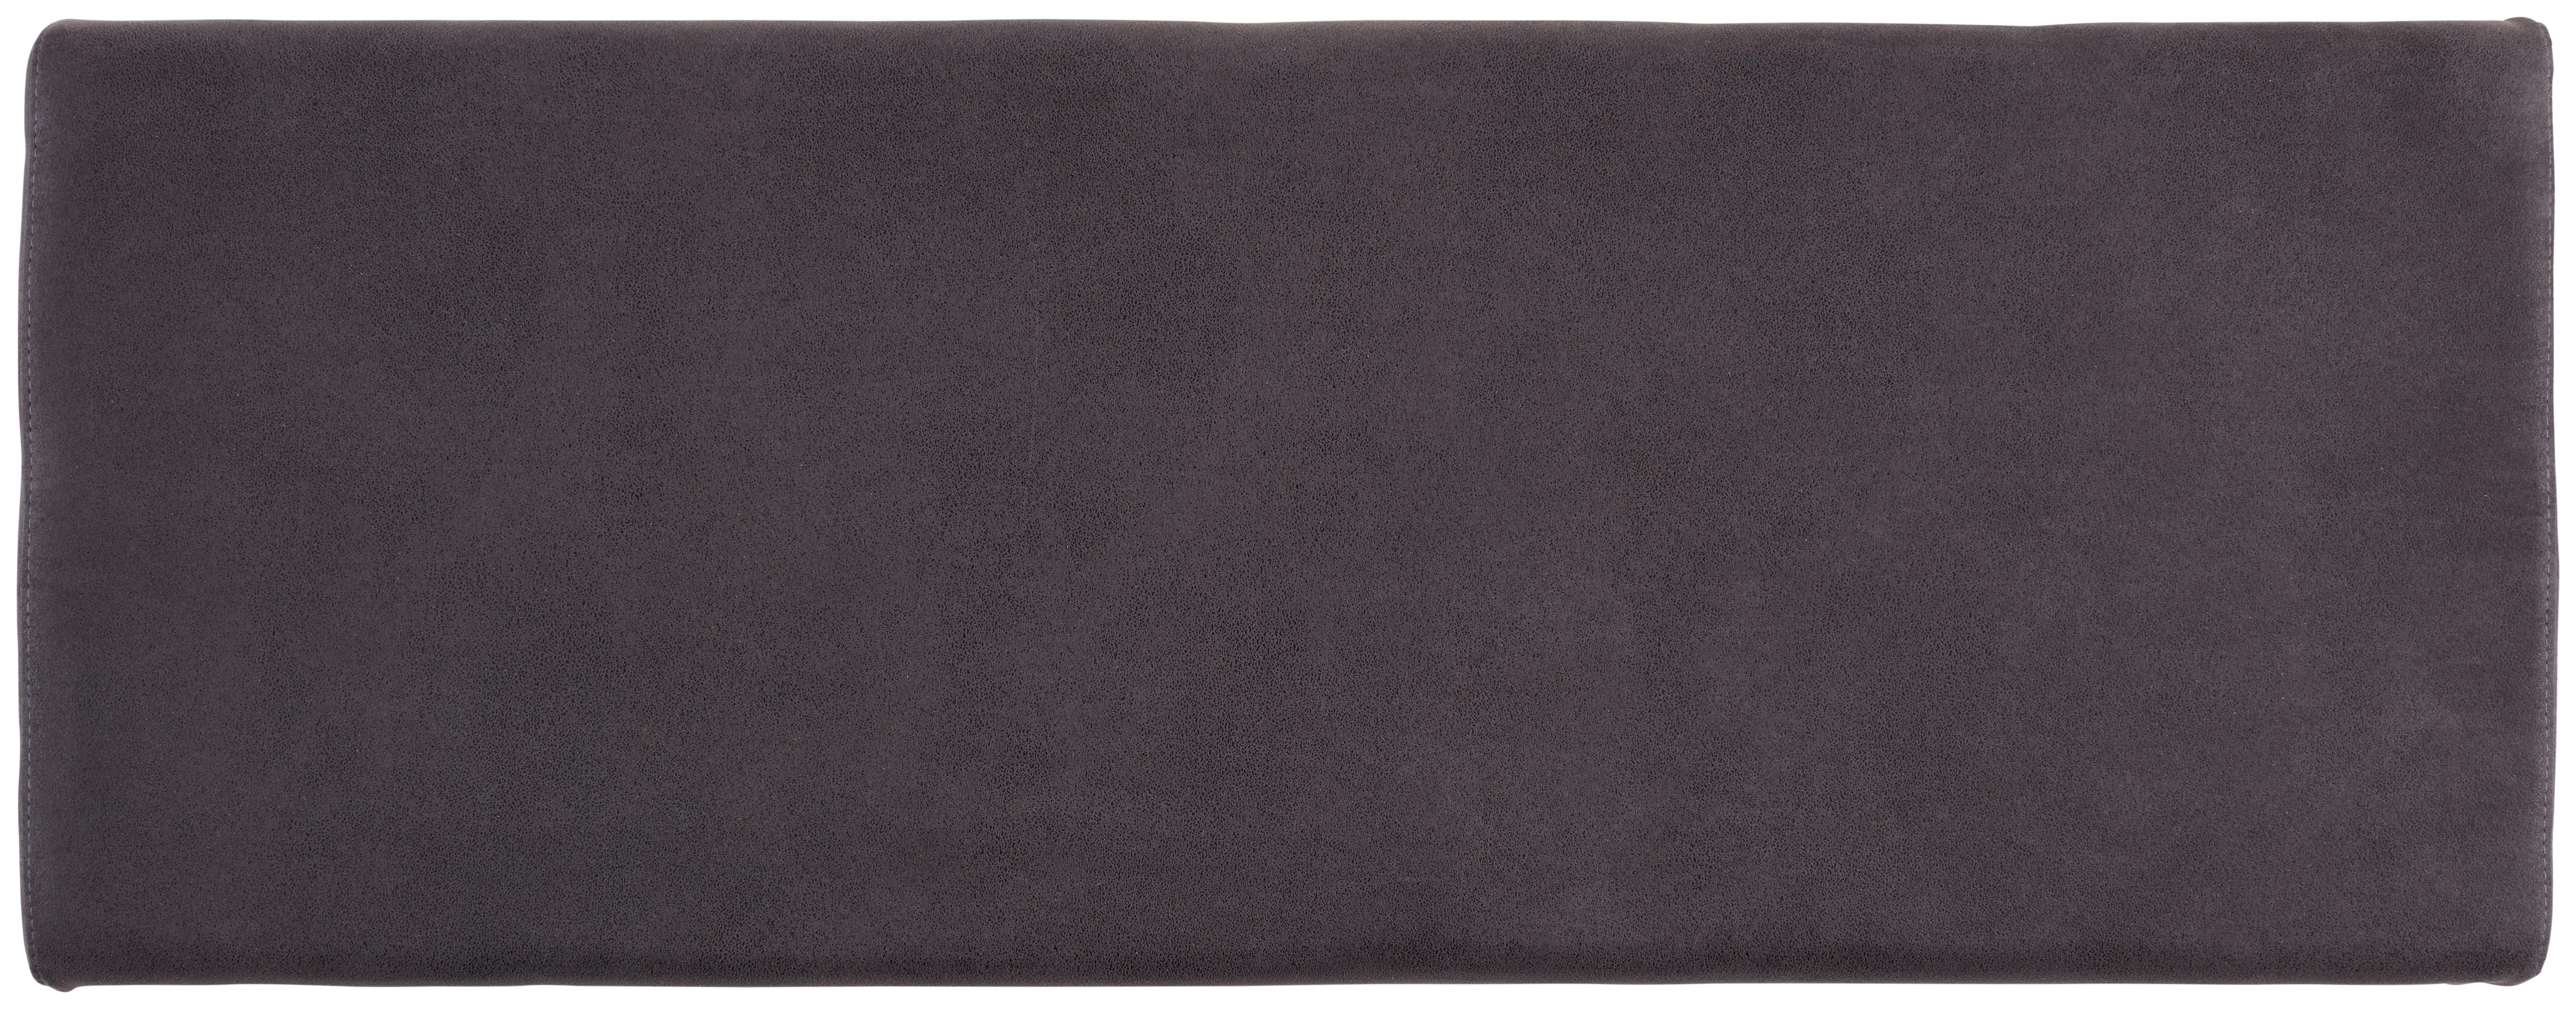 Sitzkissen für Garderobenbank Ontario Grau 96x37 cm - Grau, MODERN, Kunststoff/Textil (96/5/37cm)